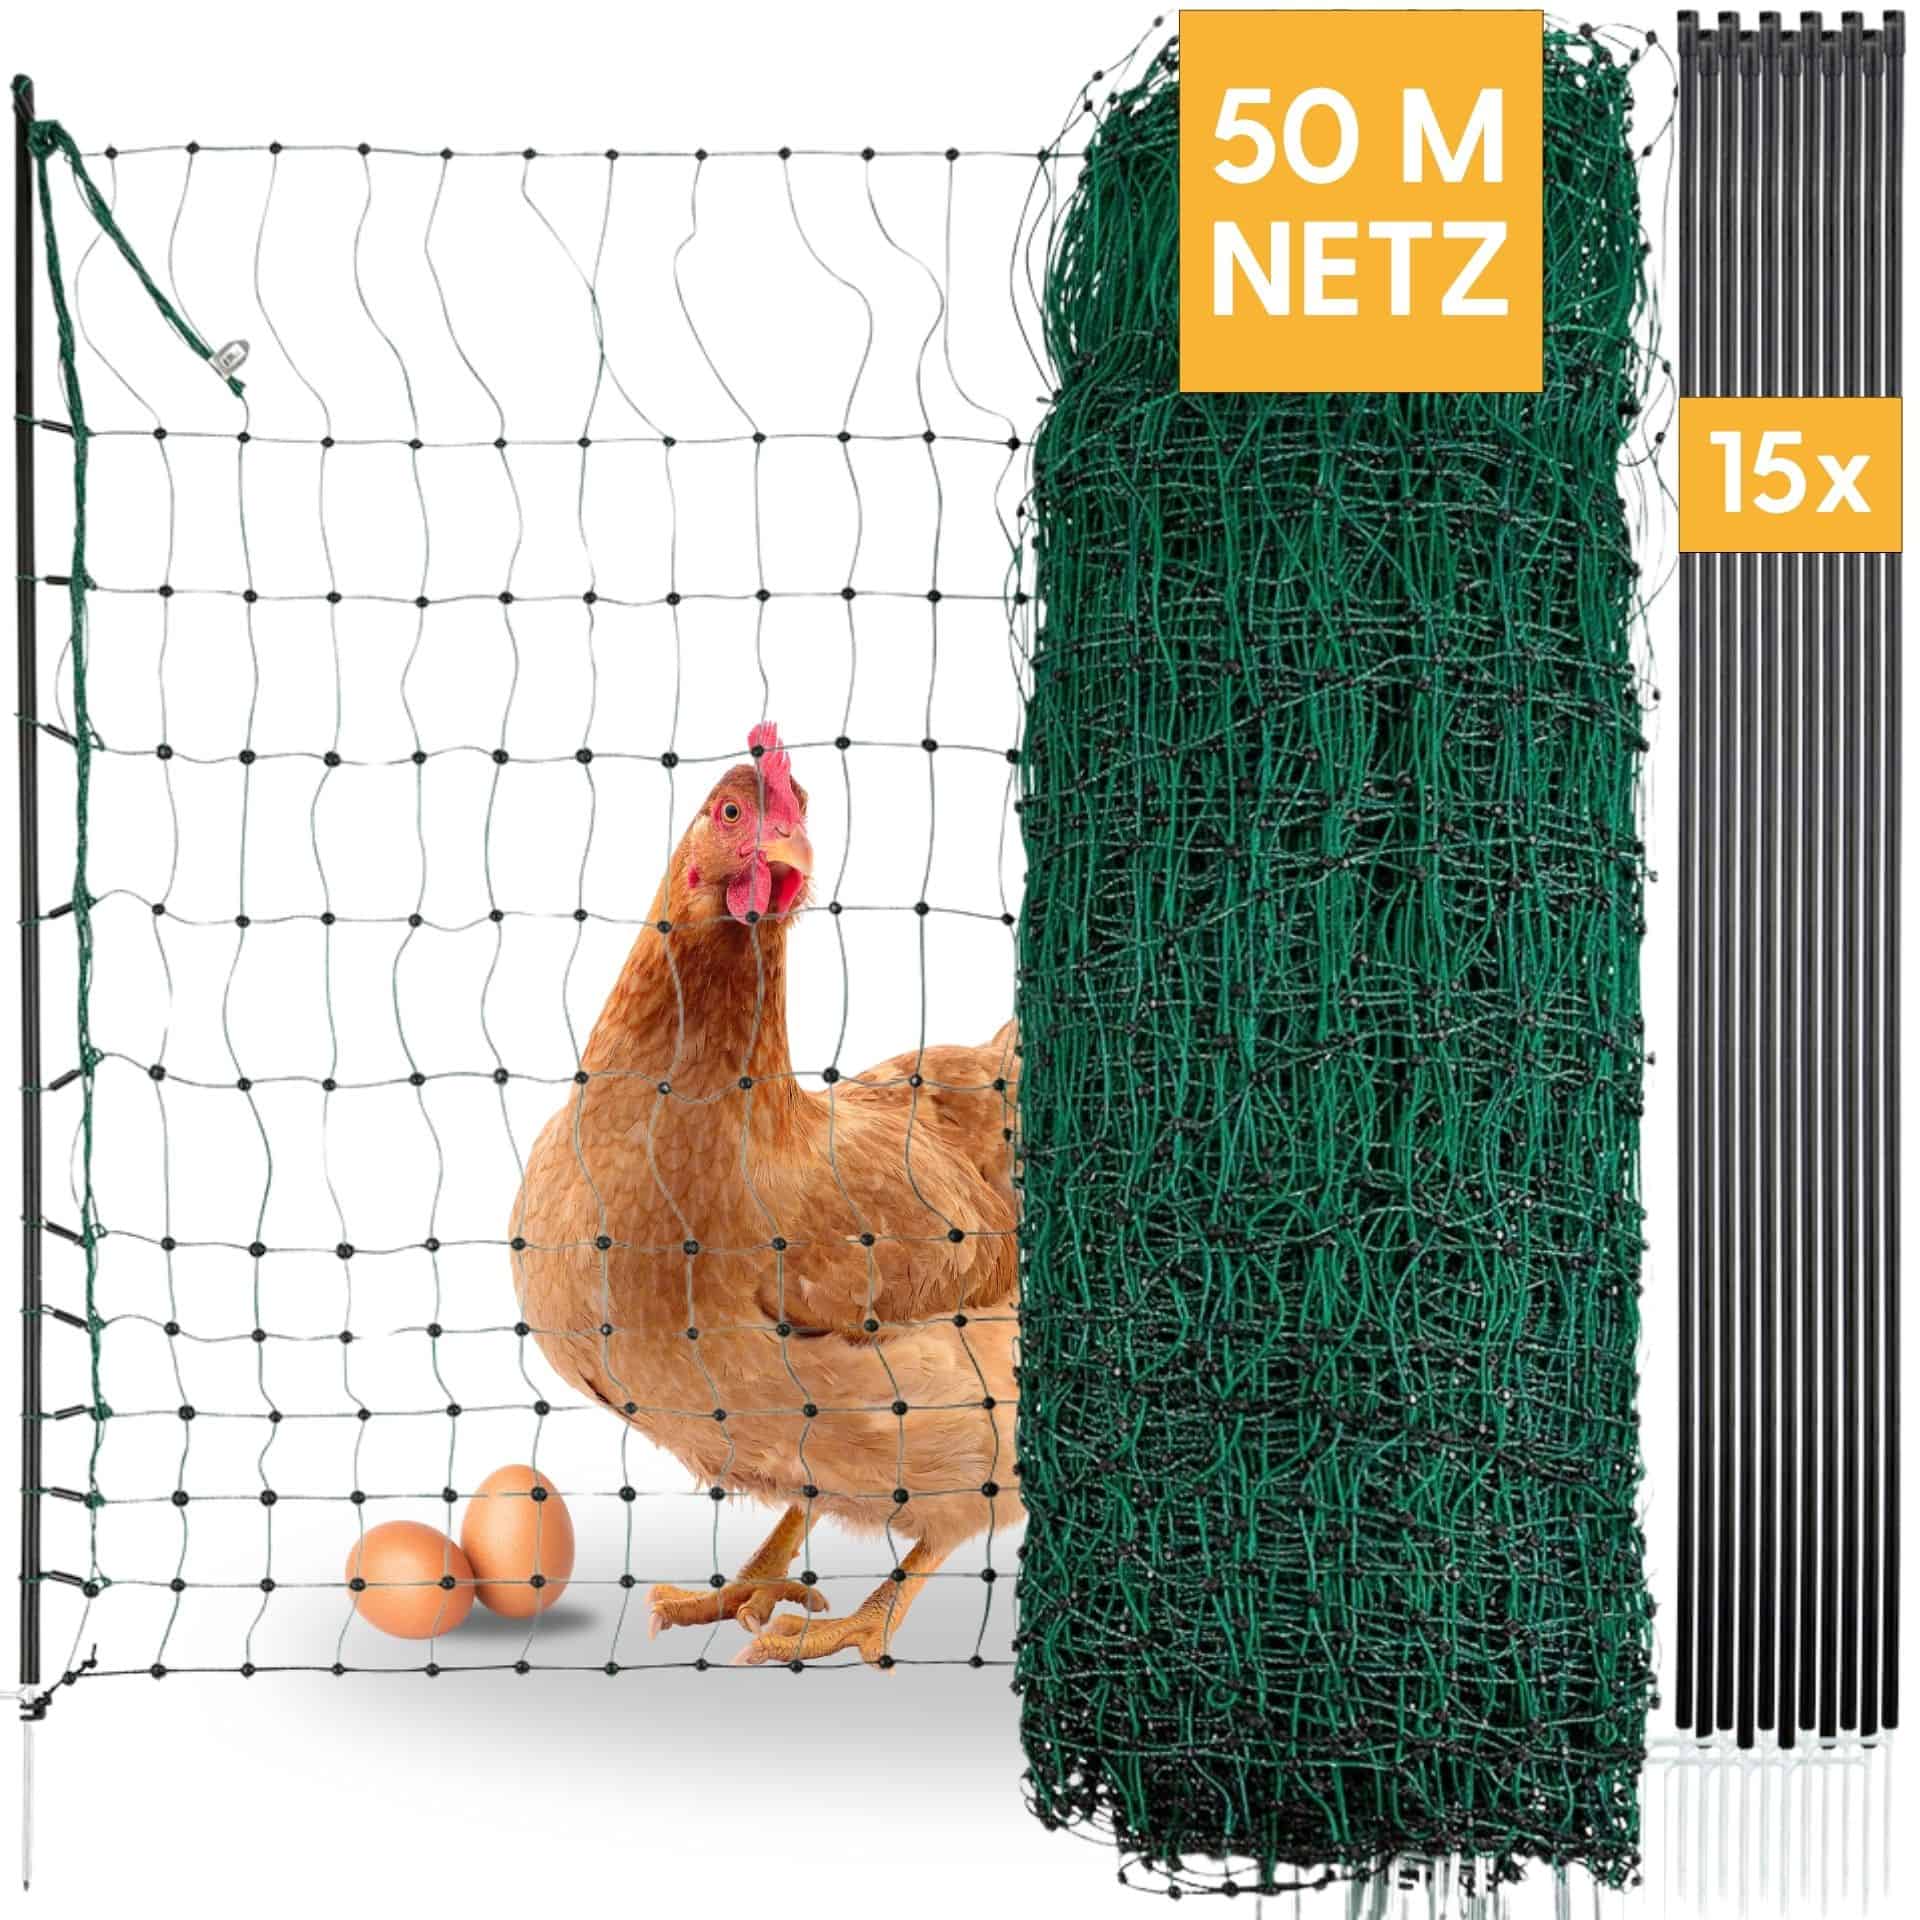 Agrarzone csirkeháló dupla csúcs, nem villamosítható, zöld 50 m x 106 cm